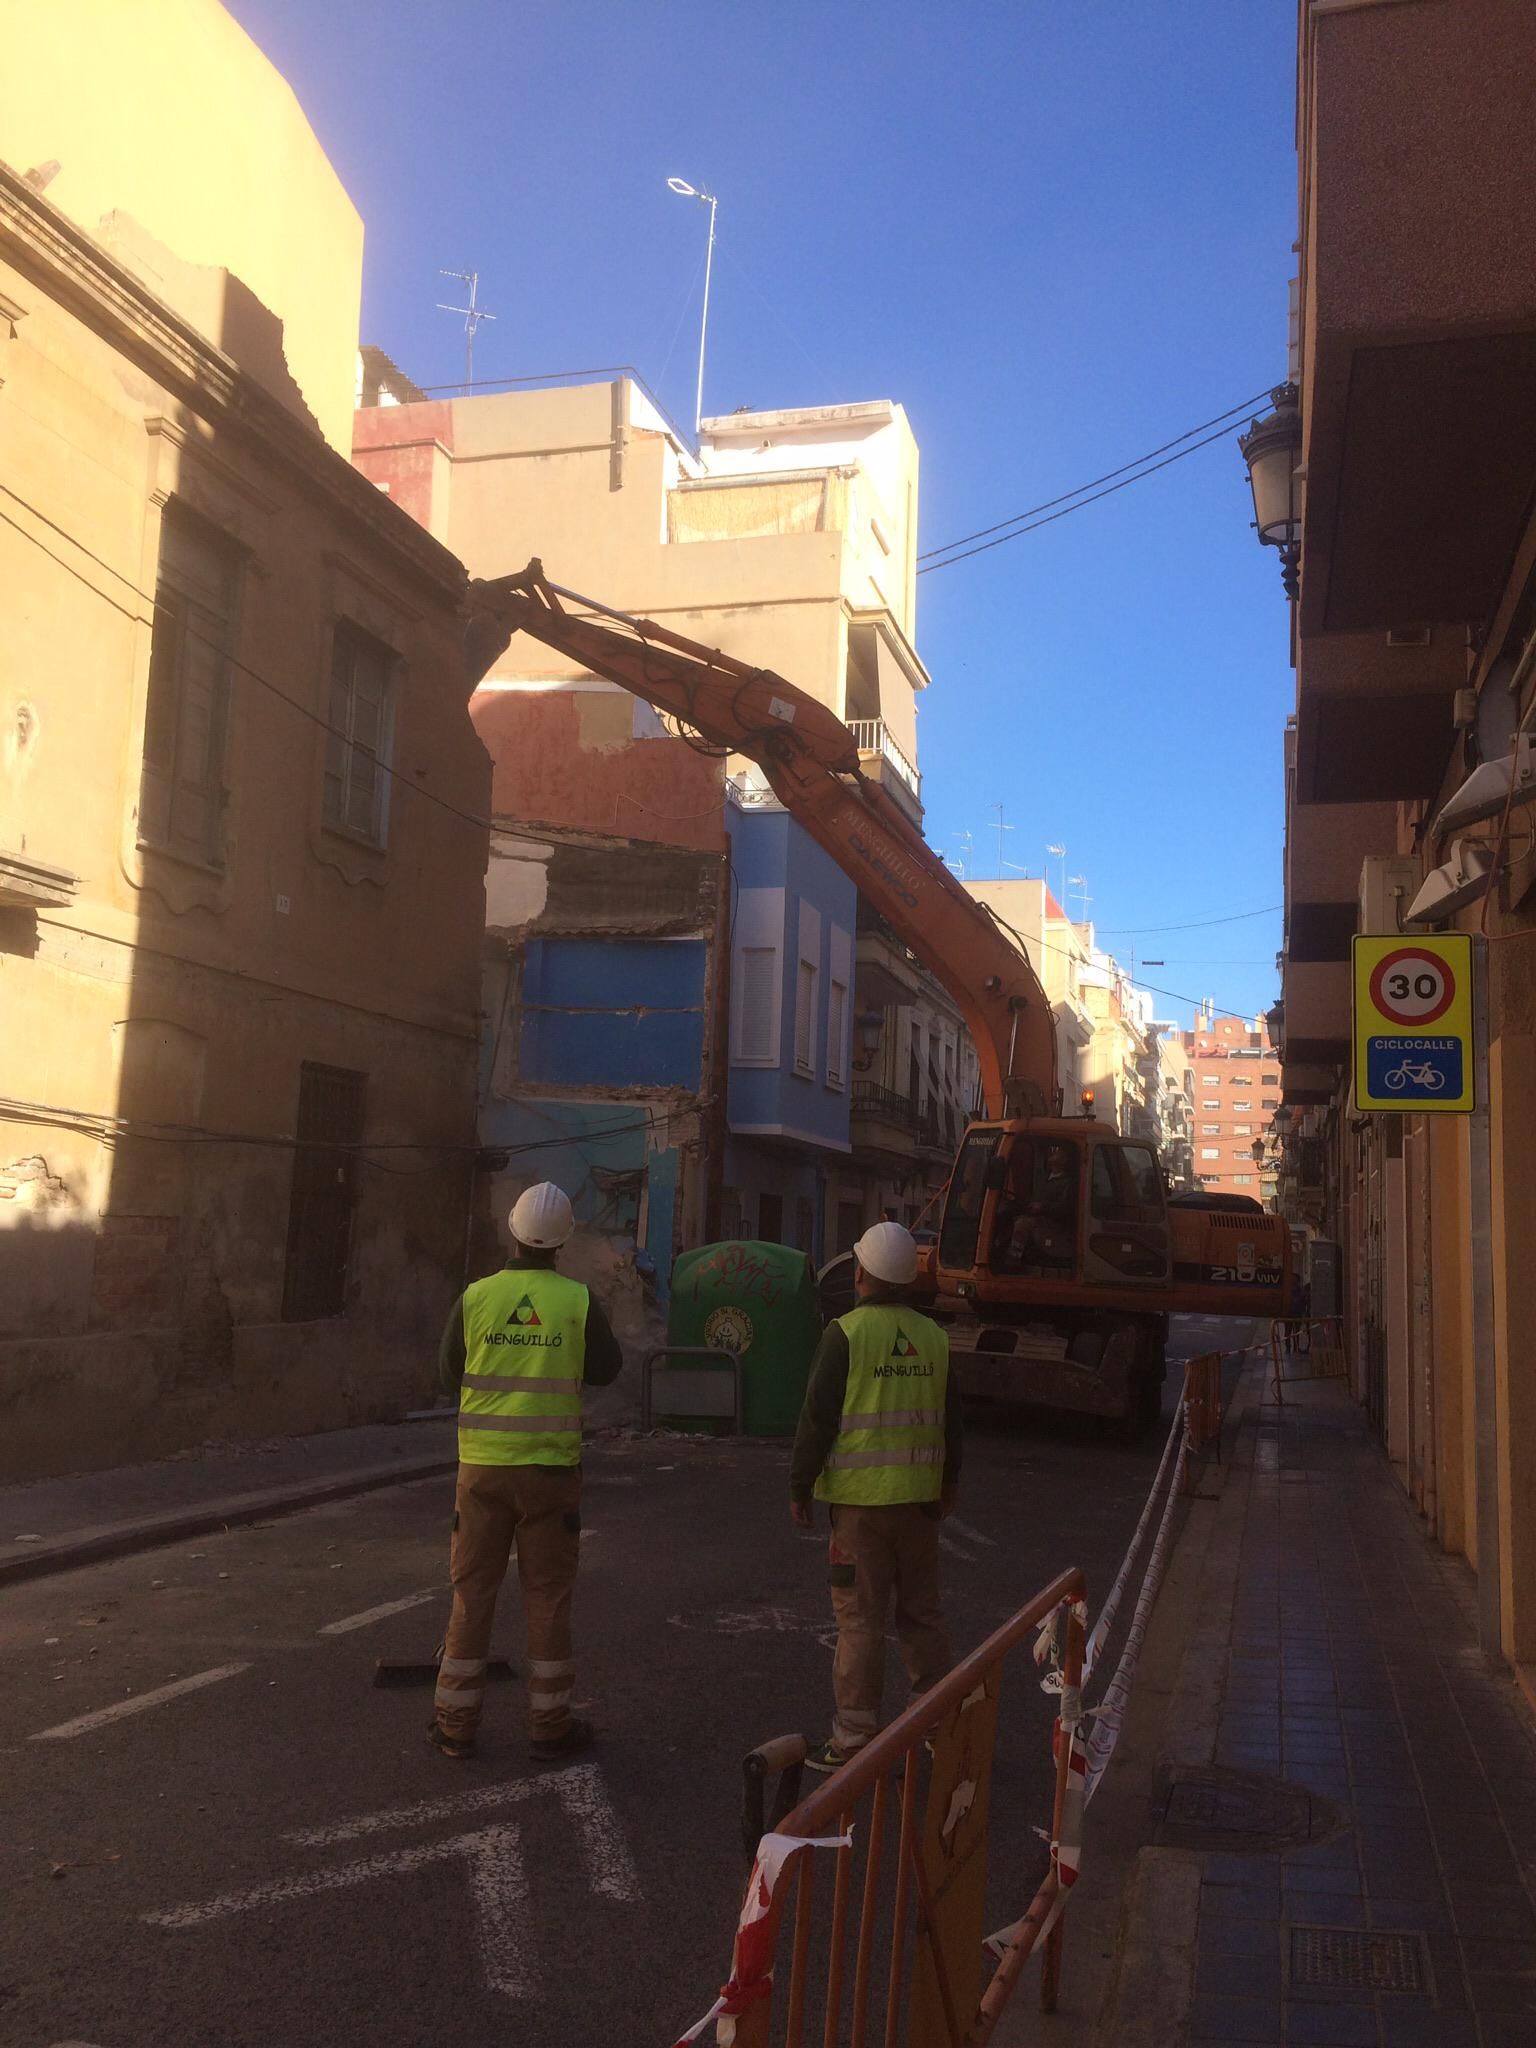 Foto 43 de Excavaciones en Castellón | Grupo Menguillo